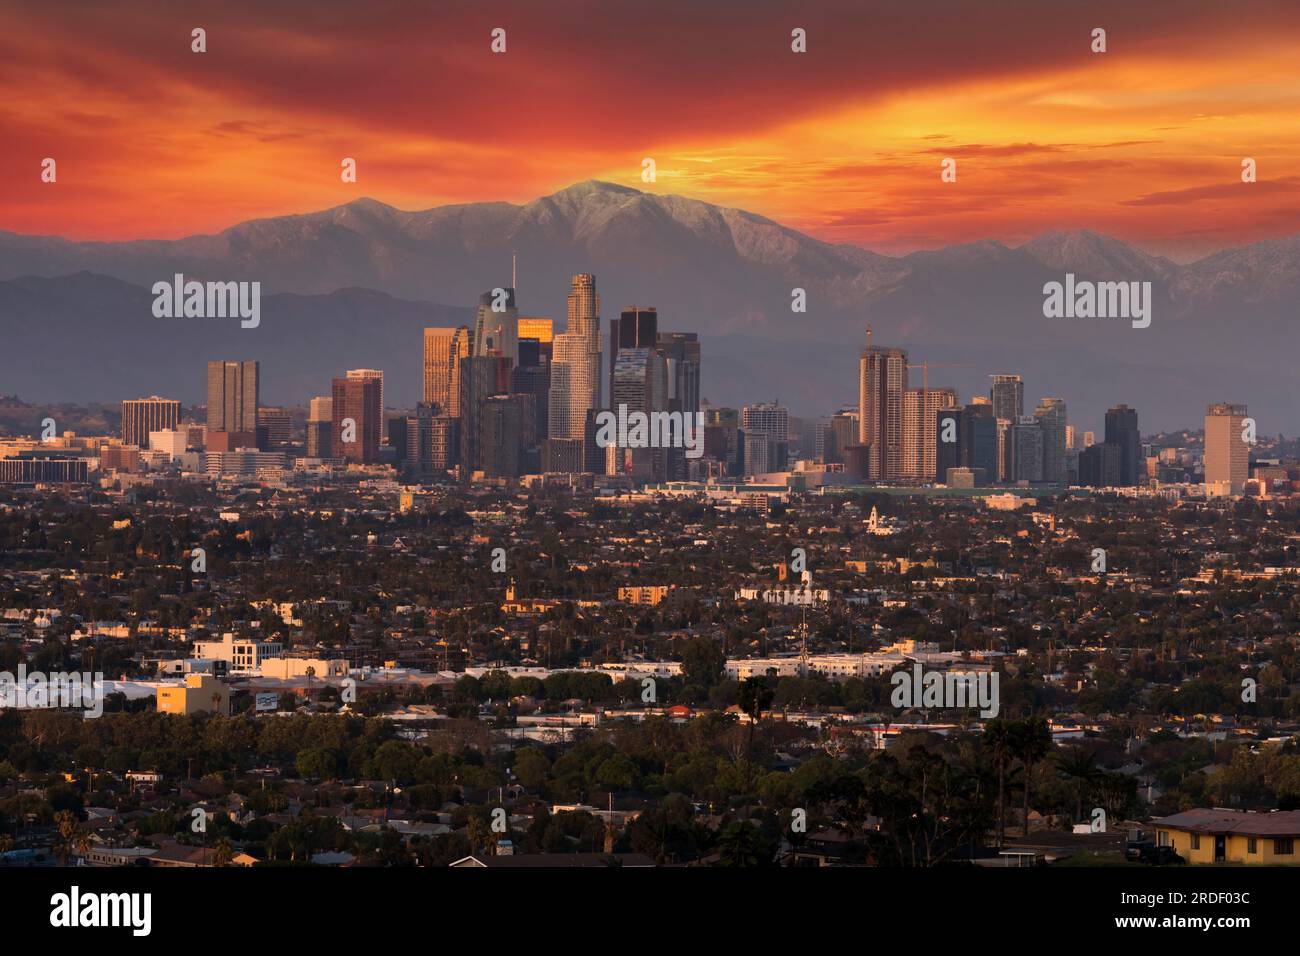 La città degli angeli, Los Angeles, California, si trova di fronte alle San Gabriel Mountains al crepuscolo Foto Stock